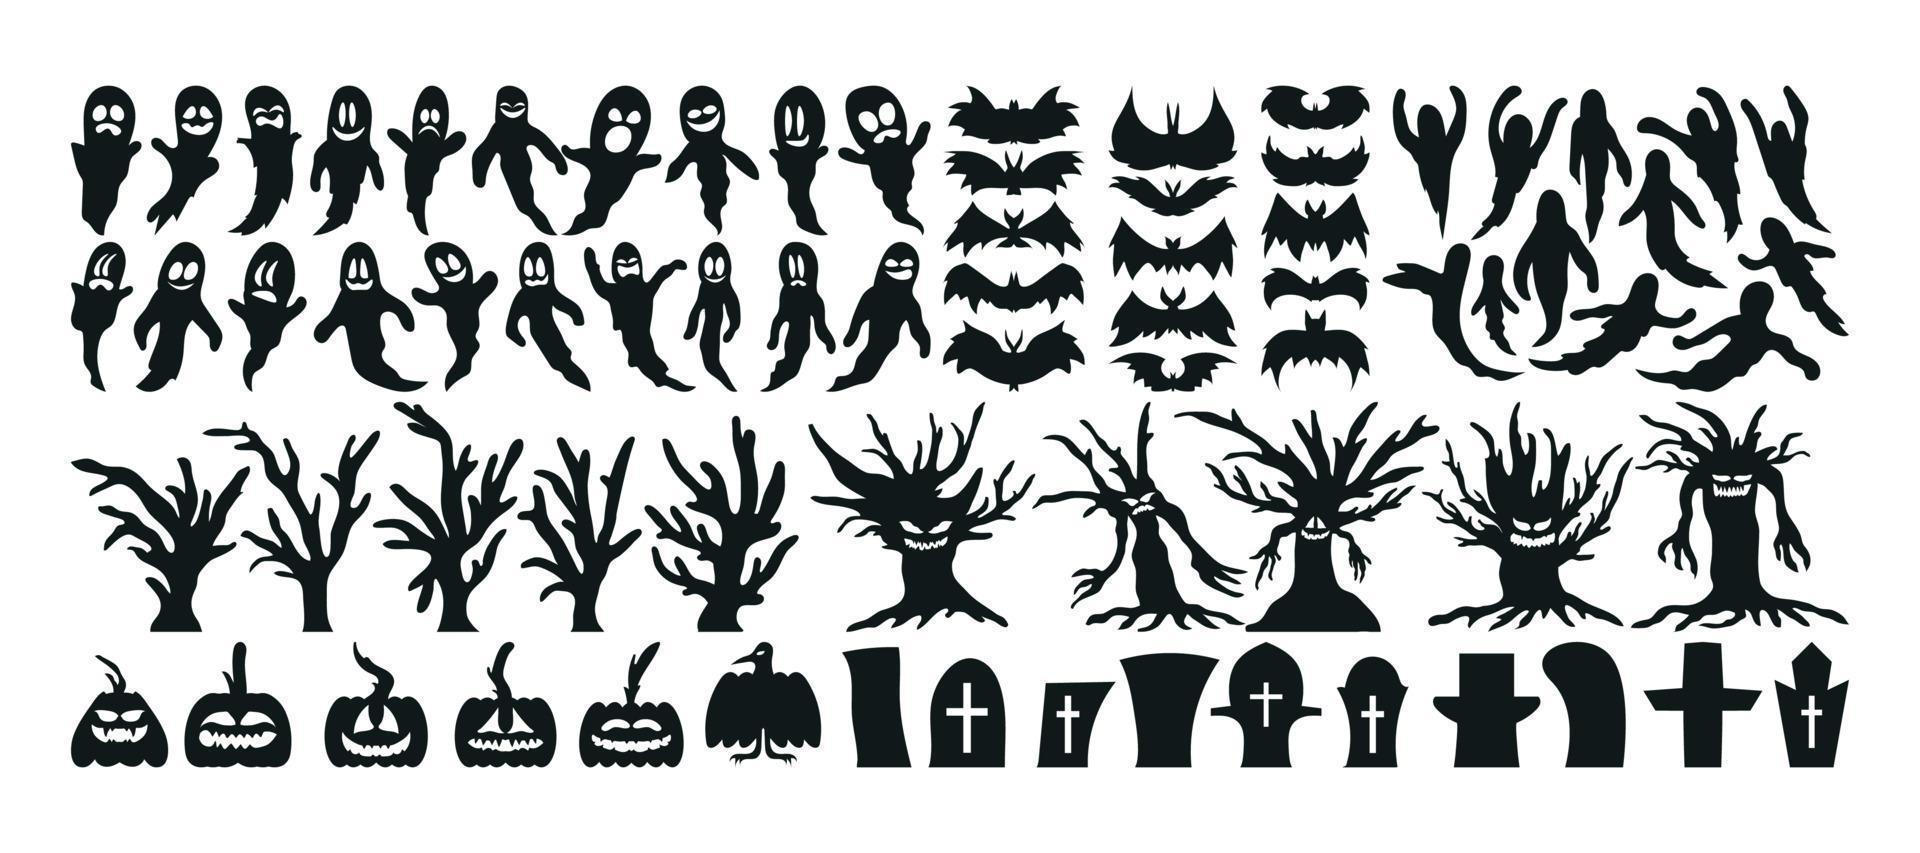 set di icone e caratteri della siluetta di halloween. illustrazione vettoriale di halloween isolata su sfondo bianco